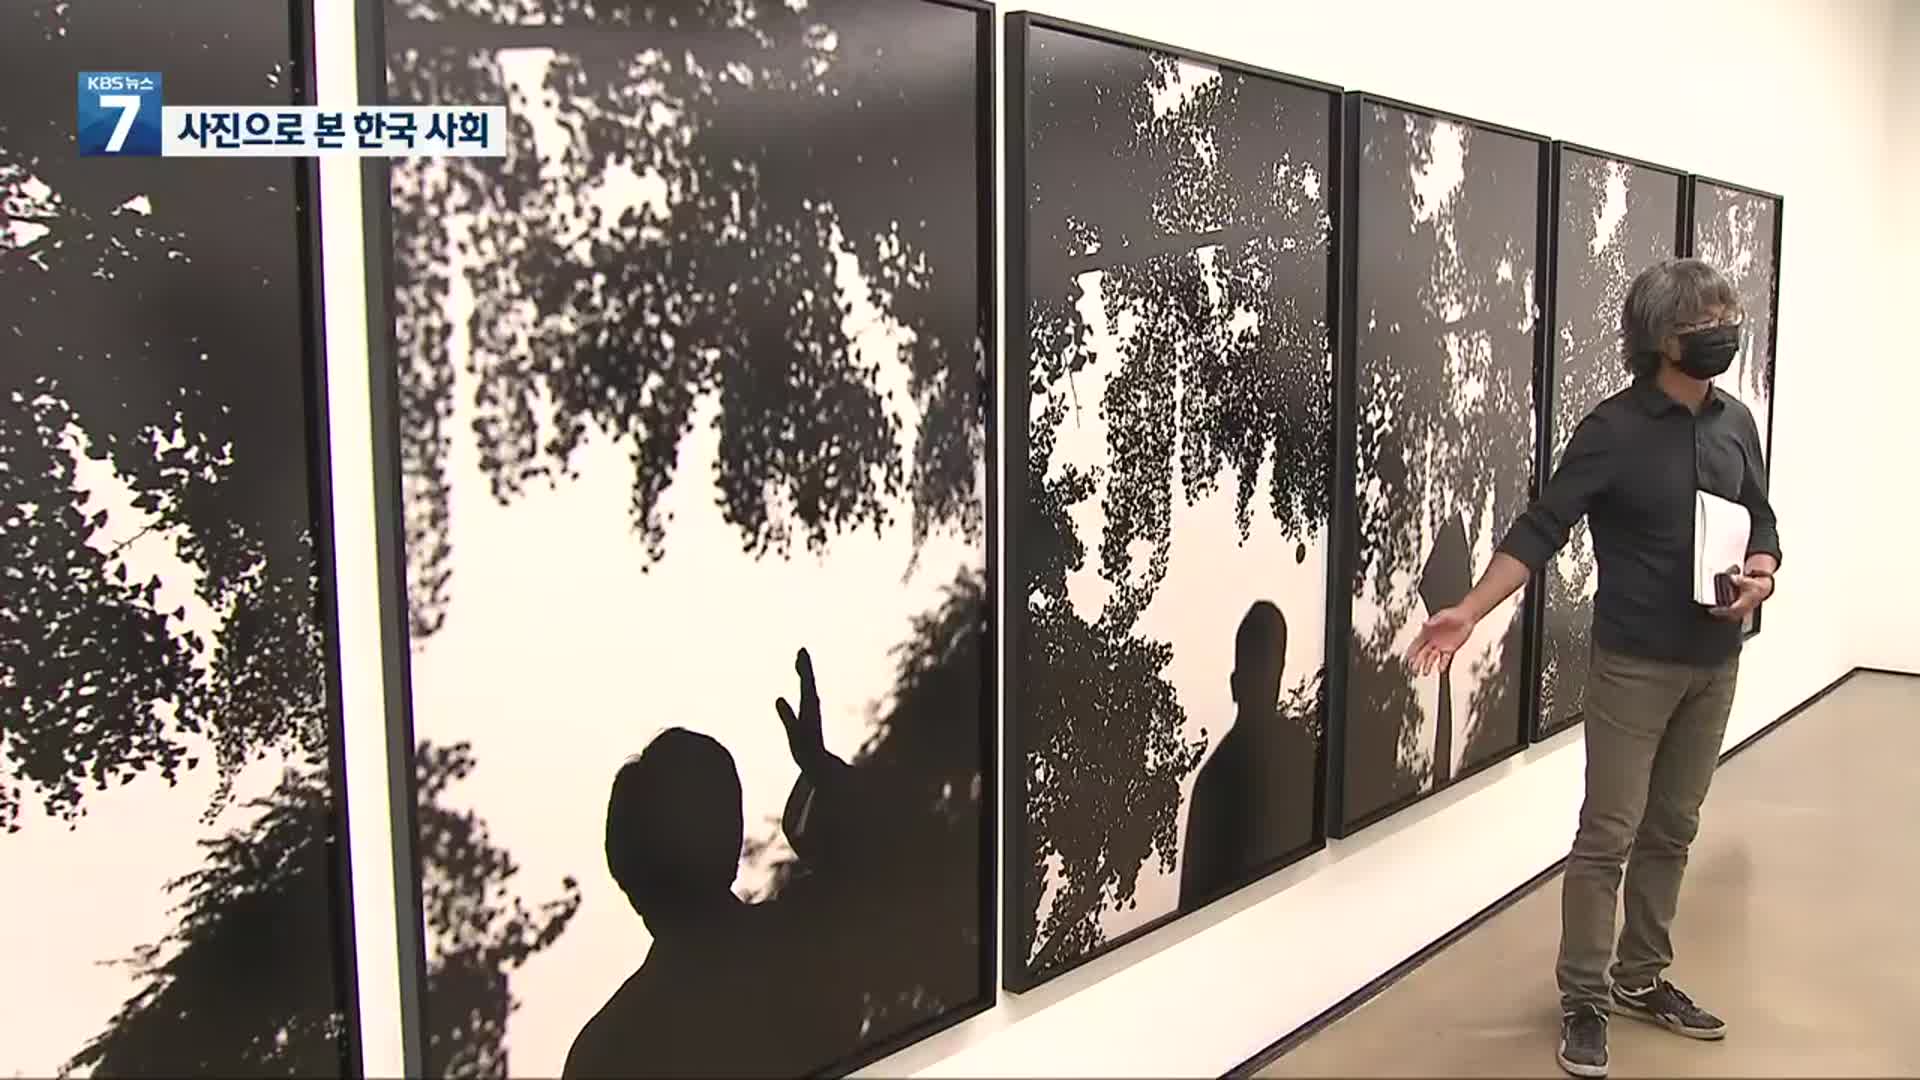 역광 사진으로 포착한 한국 사회의 초상